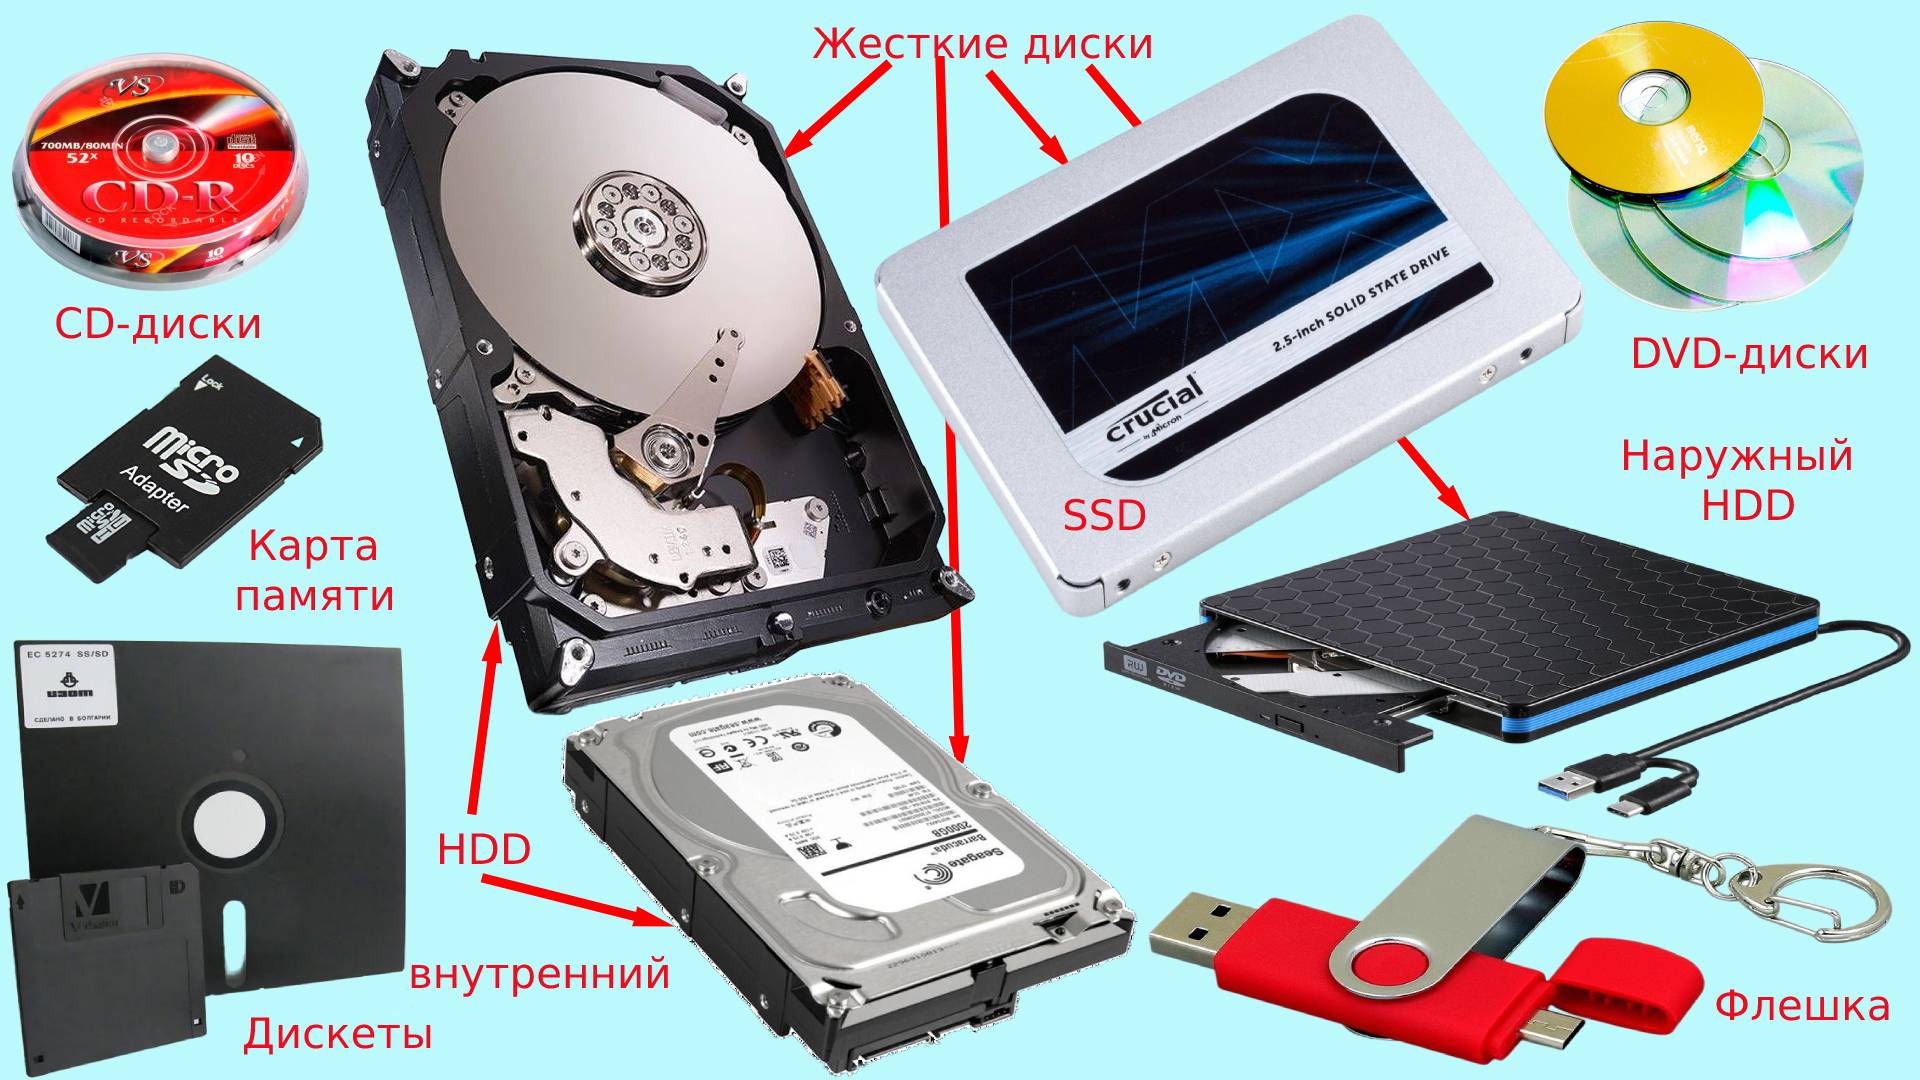 Внешняя память компьютера дискеты карта памяти жесткий диск флешка DVD-диск CD-диски